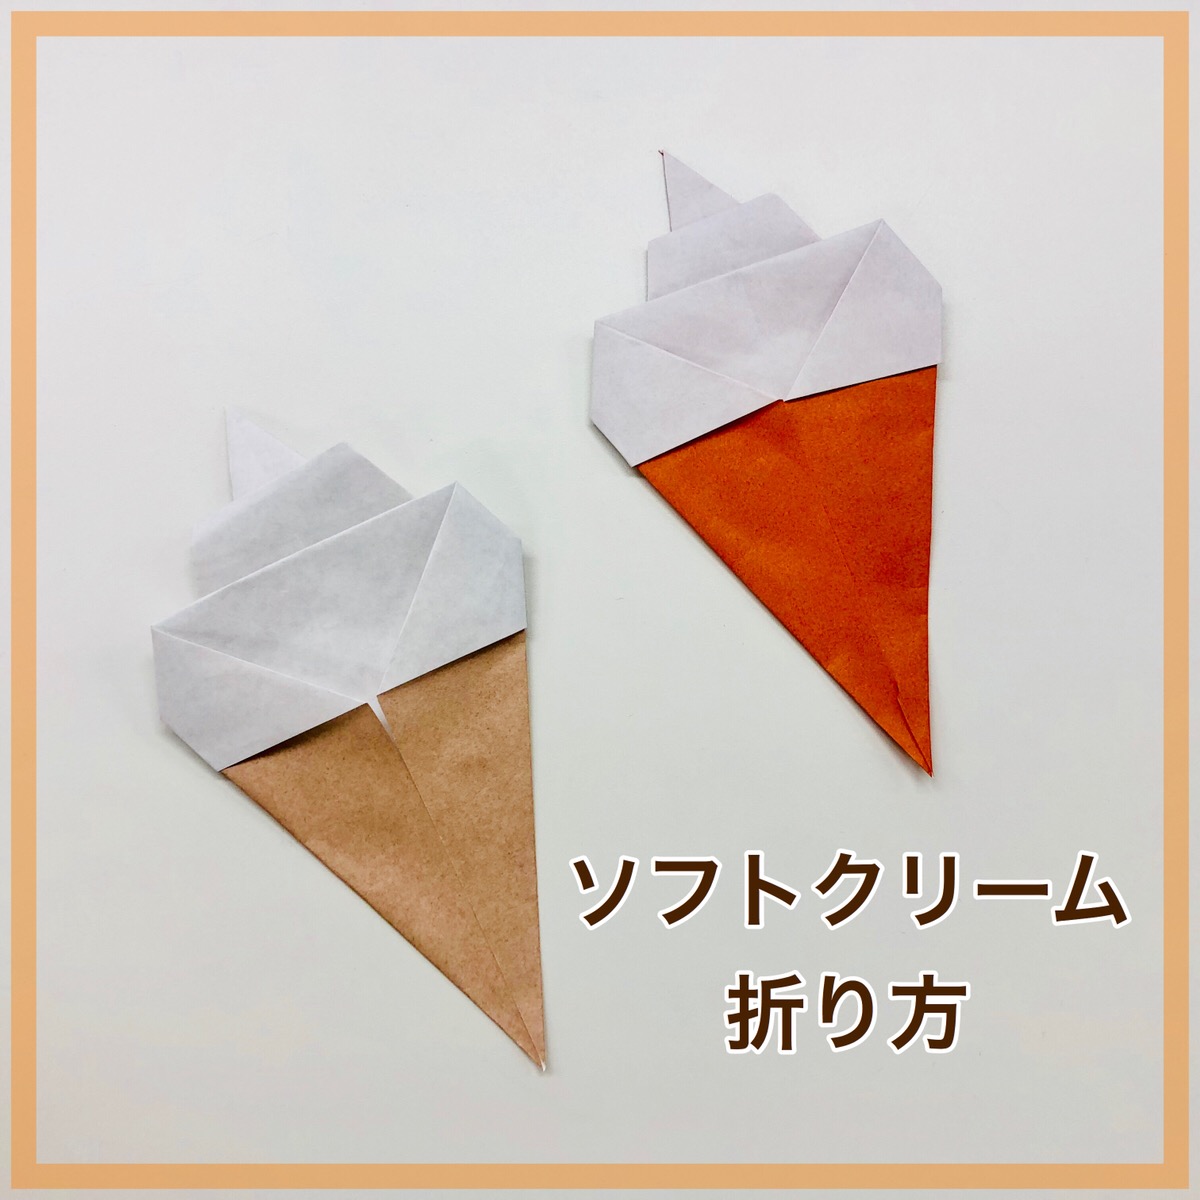 簡単折り紙製作「ソフトクリームの作り方」